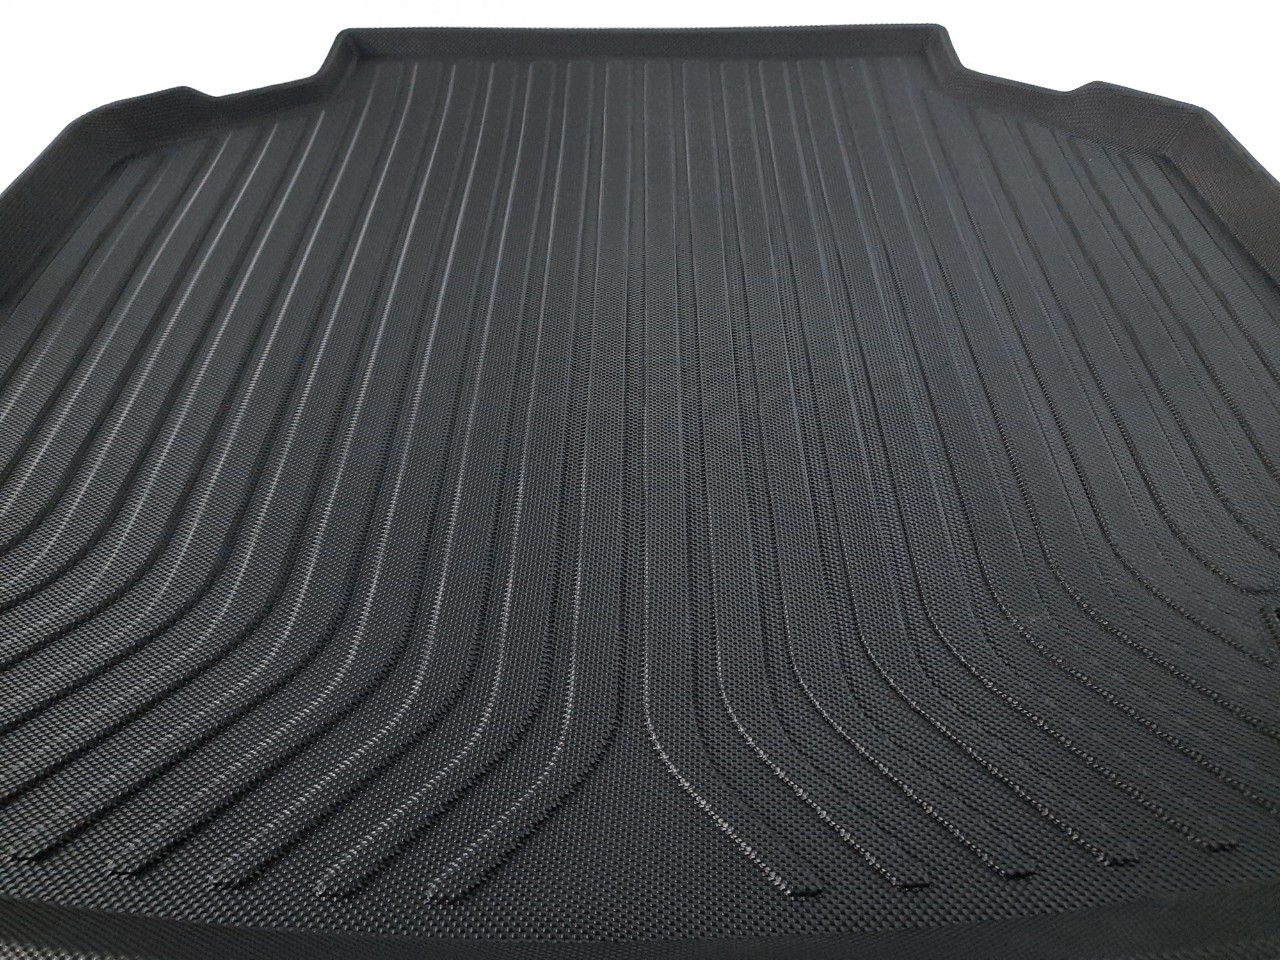 Thảm lót cốp xe ô tô Honda CRV 2013-2017 nhãn hiệu Macsim chất liệu TPV cao cấp màu đen(030) (Ảnh 4)